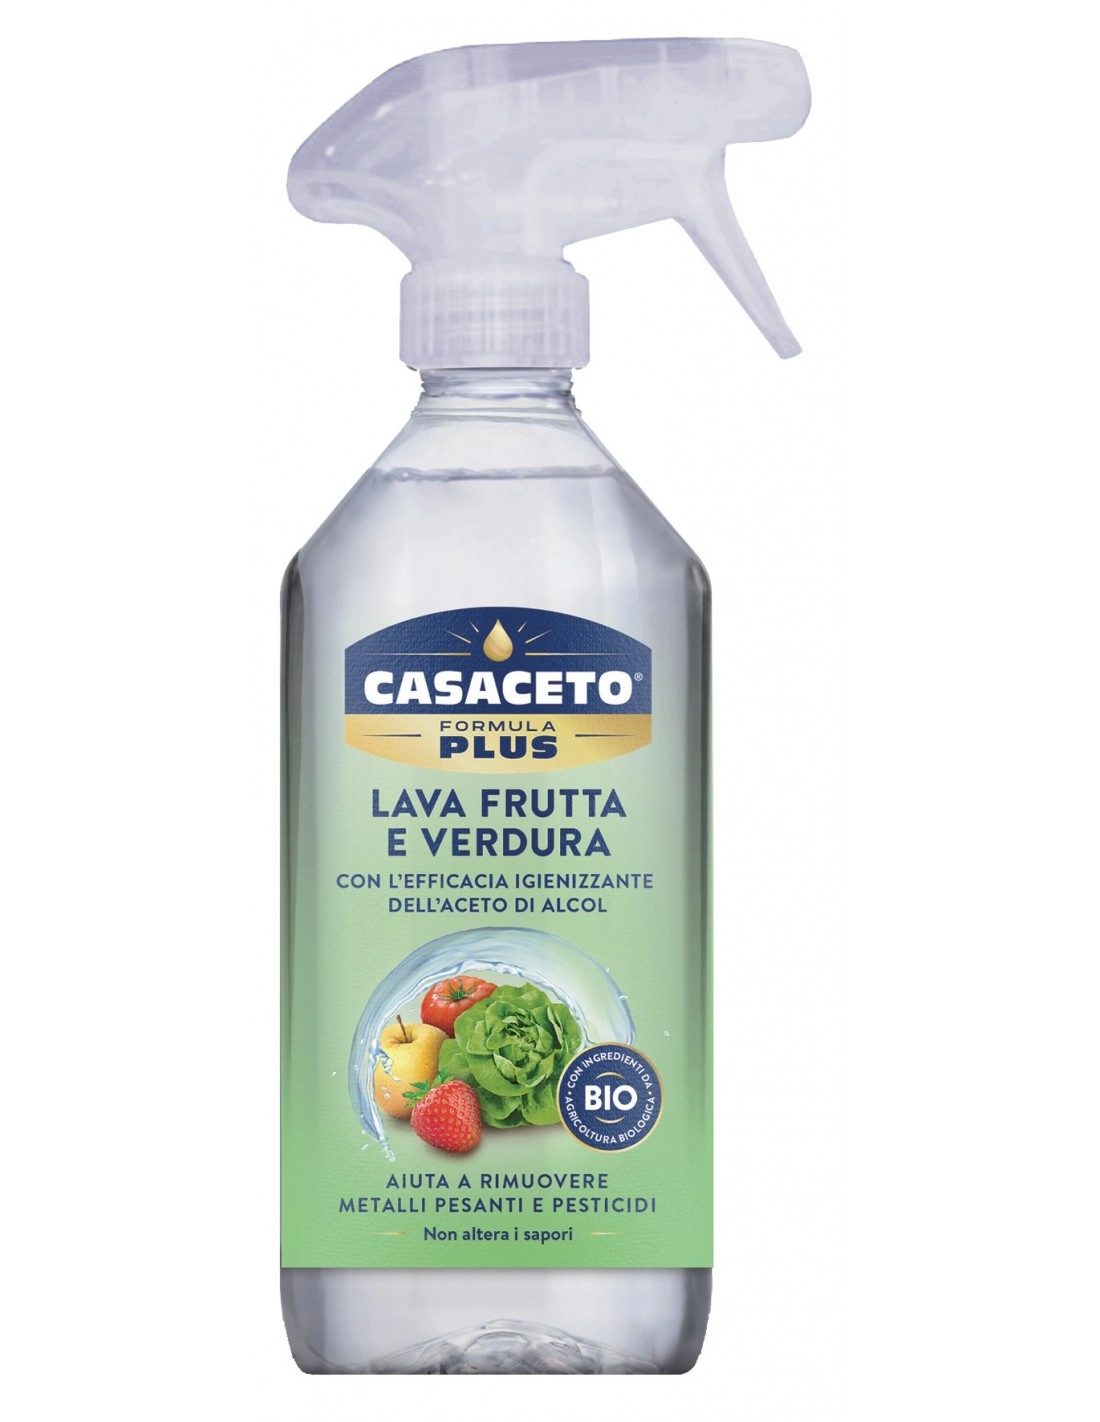 Image of Formula Plus Lava Frutta Verdura Casaceto(R) 500ml